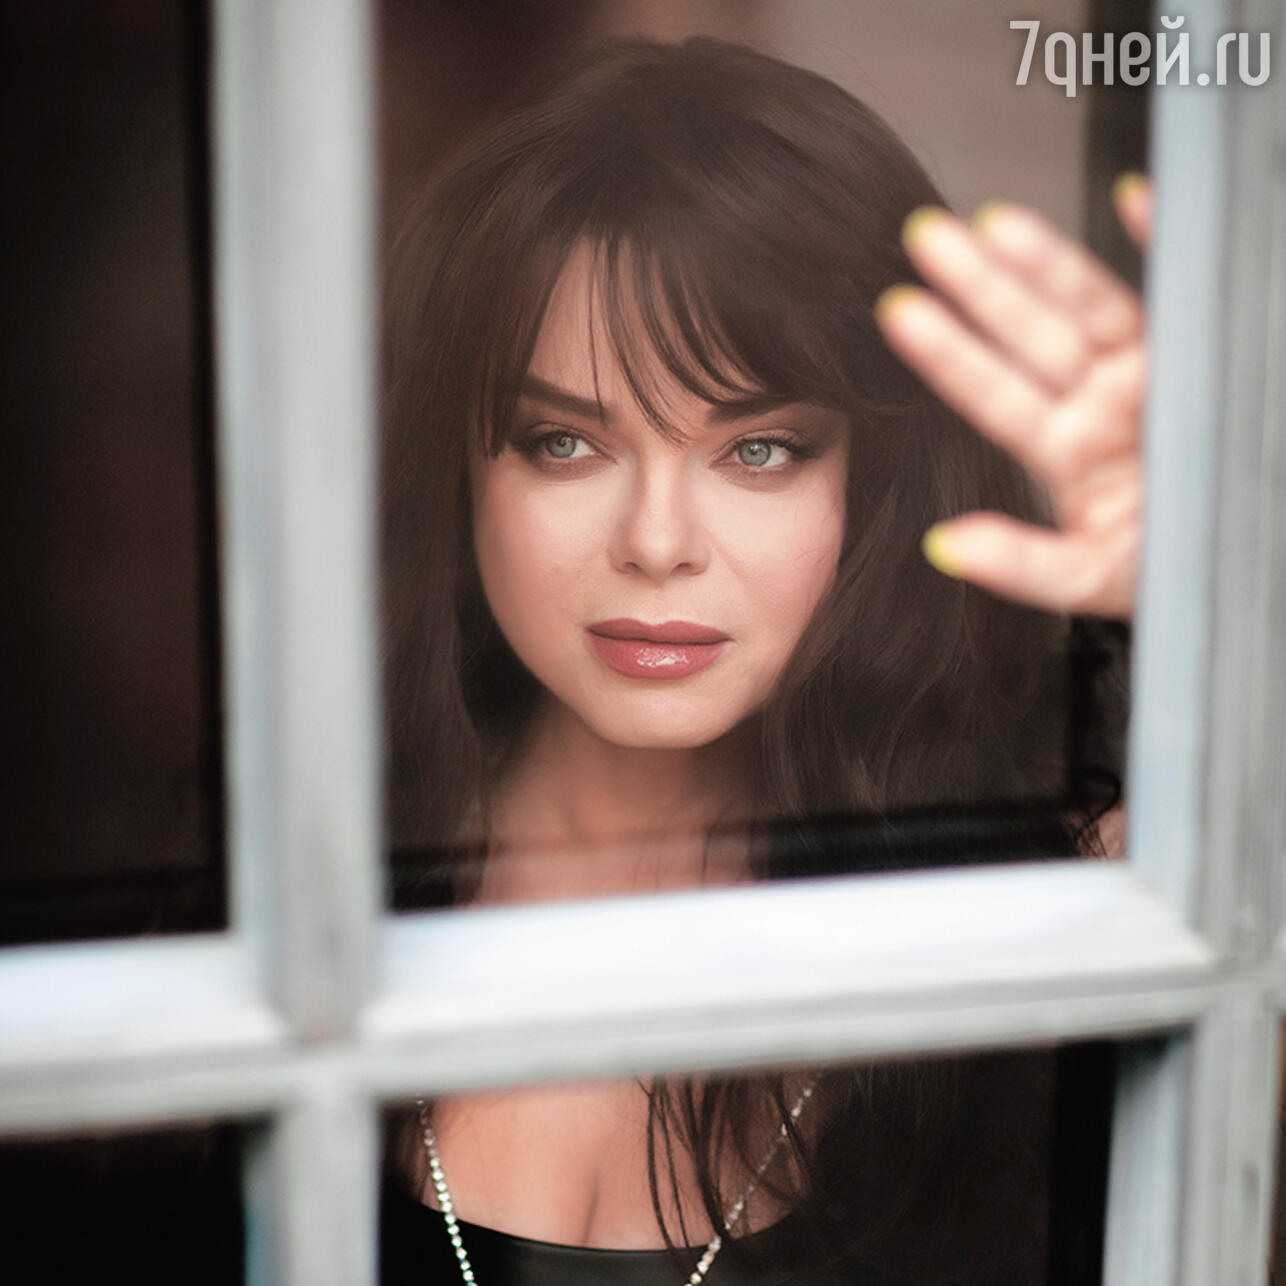 Наташа Королева позирует в купальнике для журнала «7 Дней», Август / rebcentr-alyans.ru